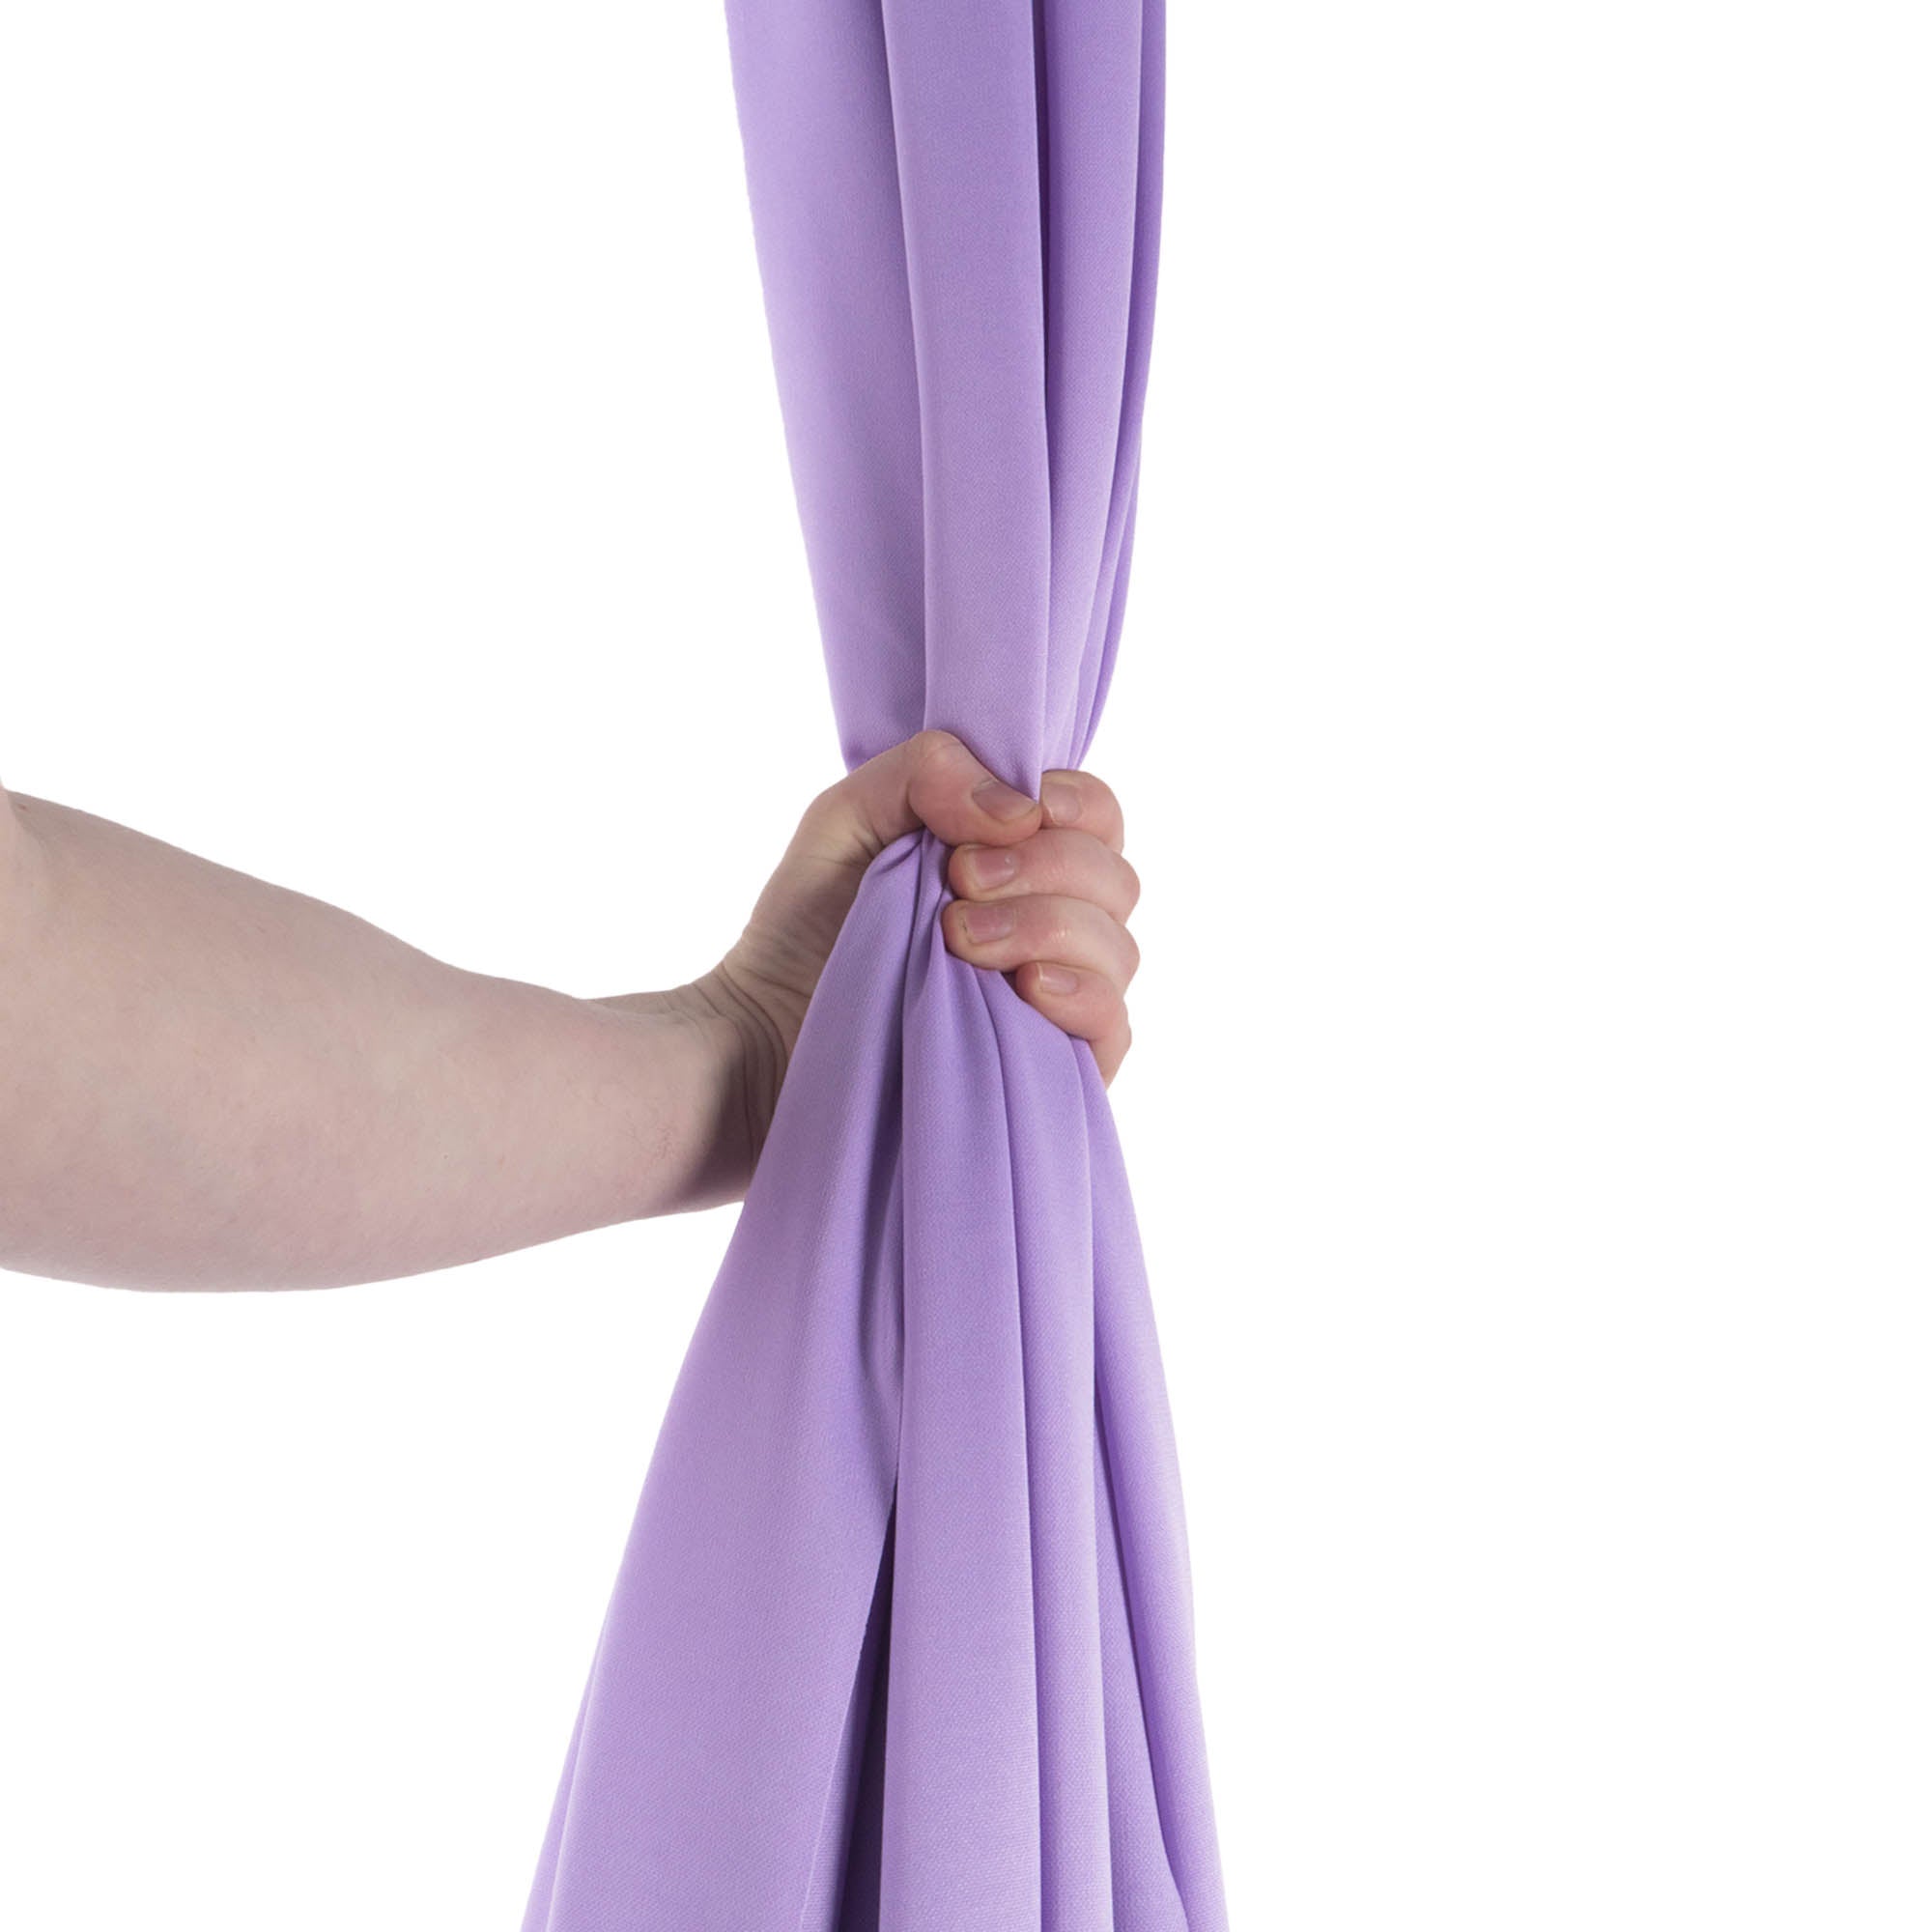 Lavender silk in hand